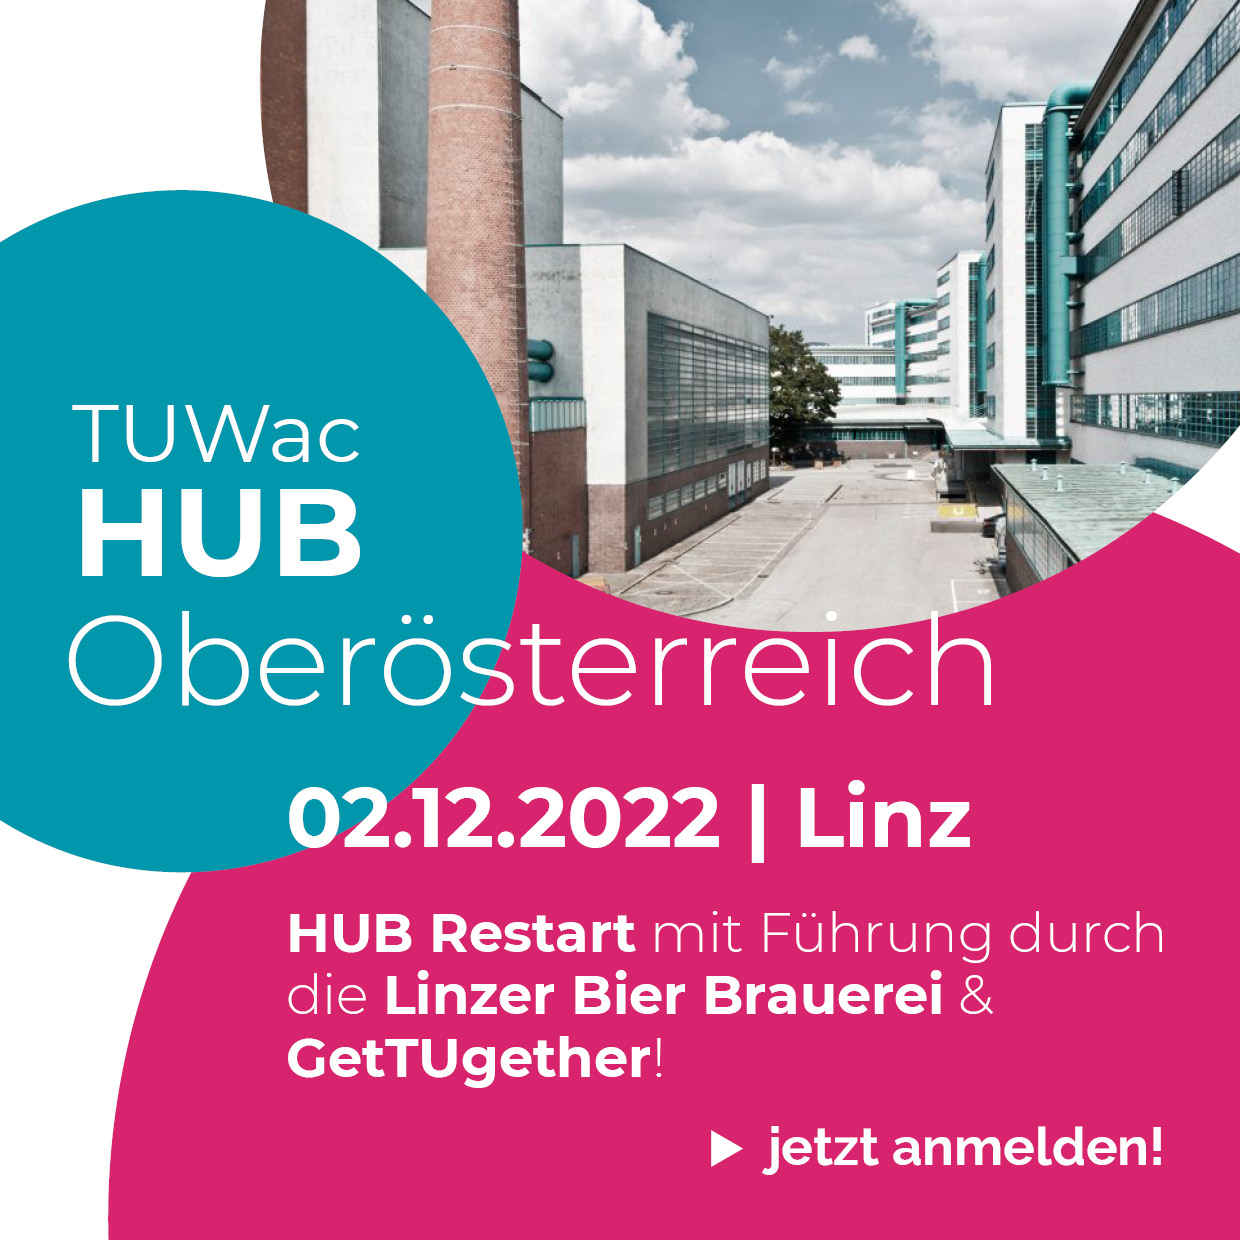 TUWac HUB – Oberösterreich Restart!